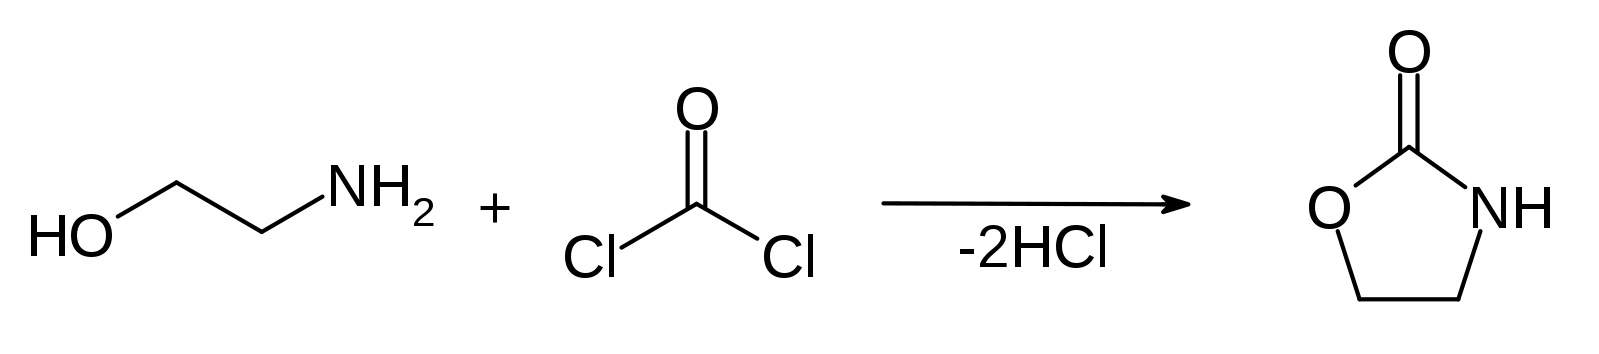 Этаналь метилацетат. Нитрилы карбоновых кислот. Нитрилопропановая кислота. Карбоновая кислота cl2. Метилацетат.